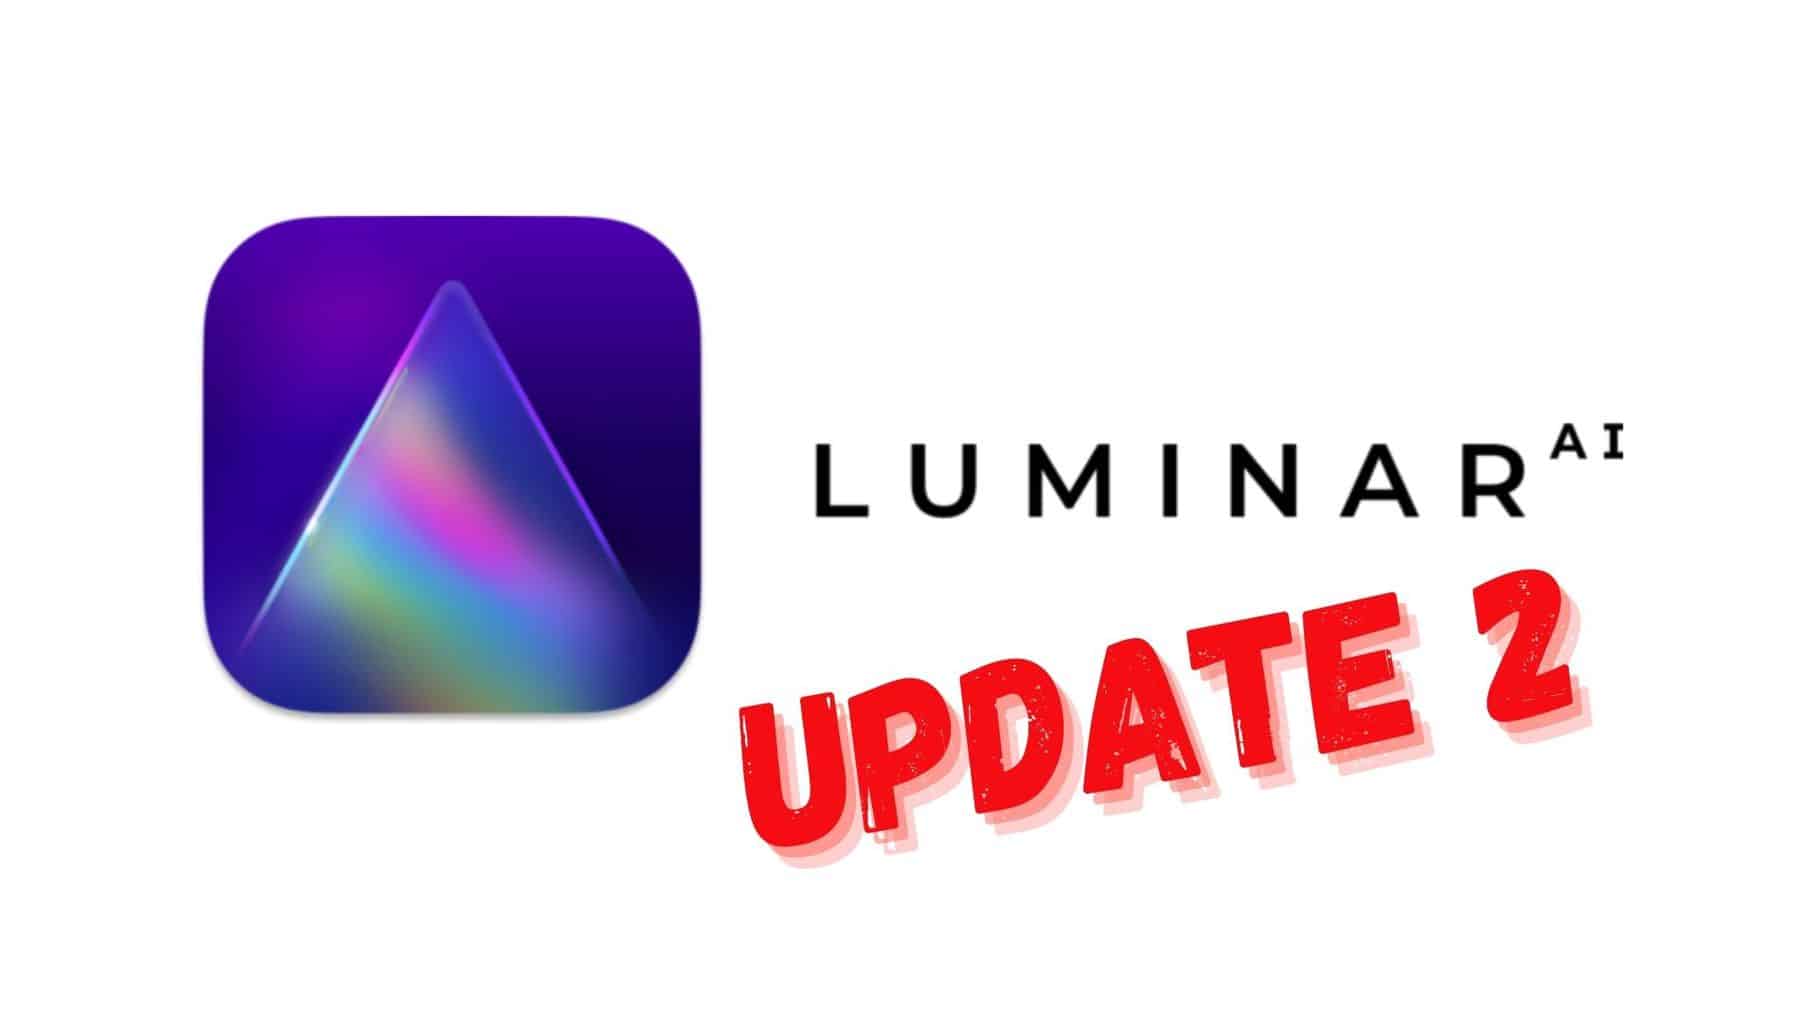 My Luminar AI Update 2 or Luminar AI 1.2 review